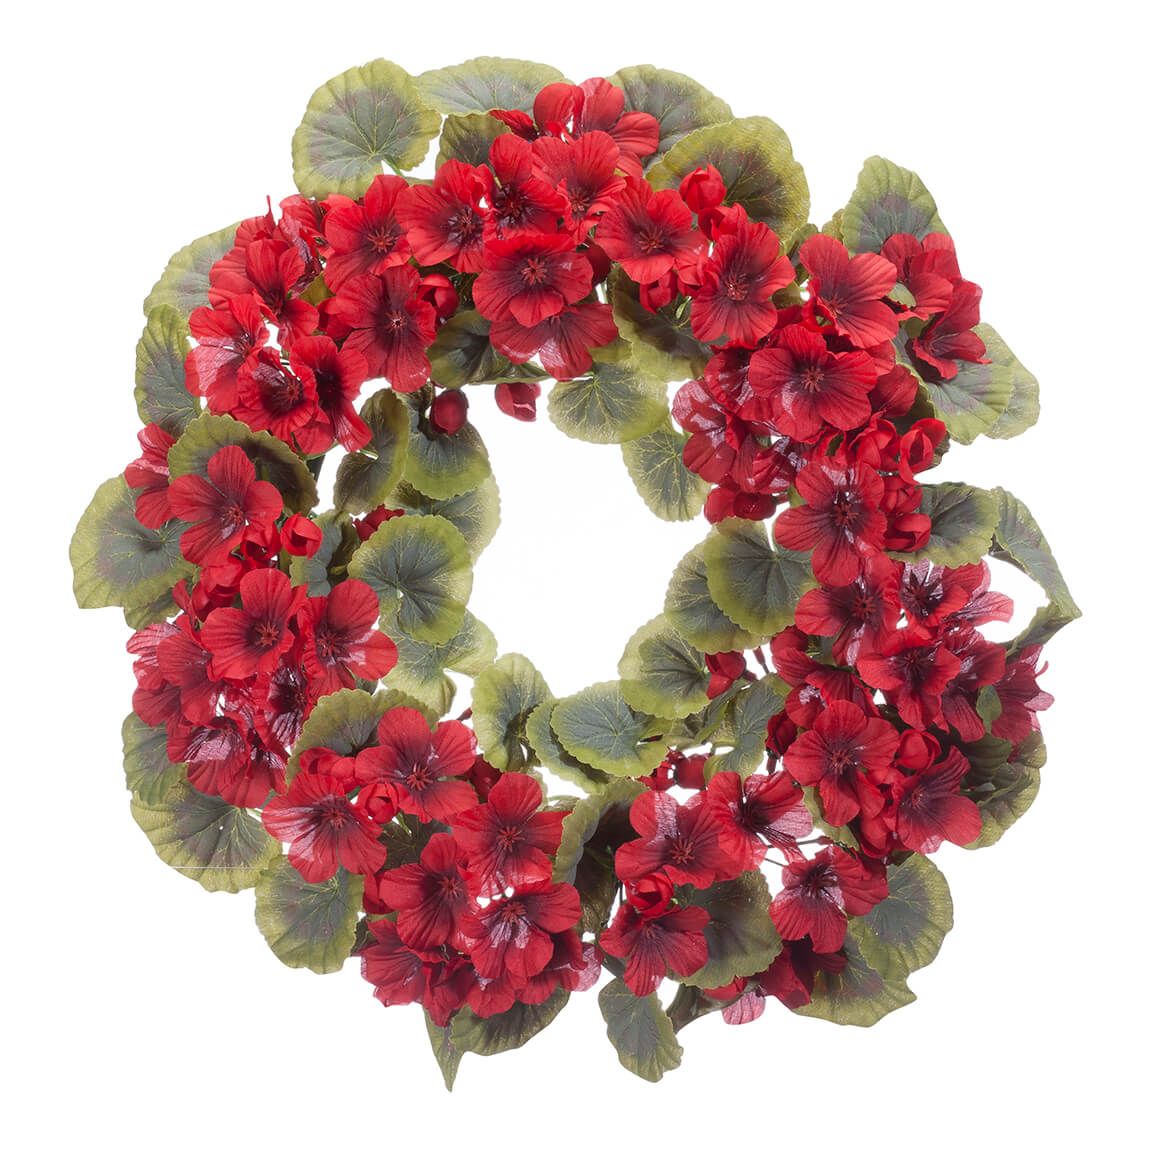 Geranium Wreath by OakRidge™ + '-' + 365030